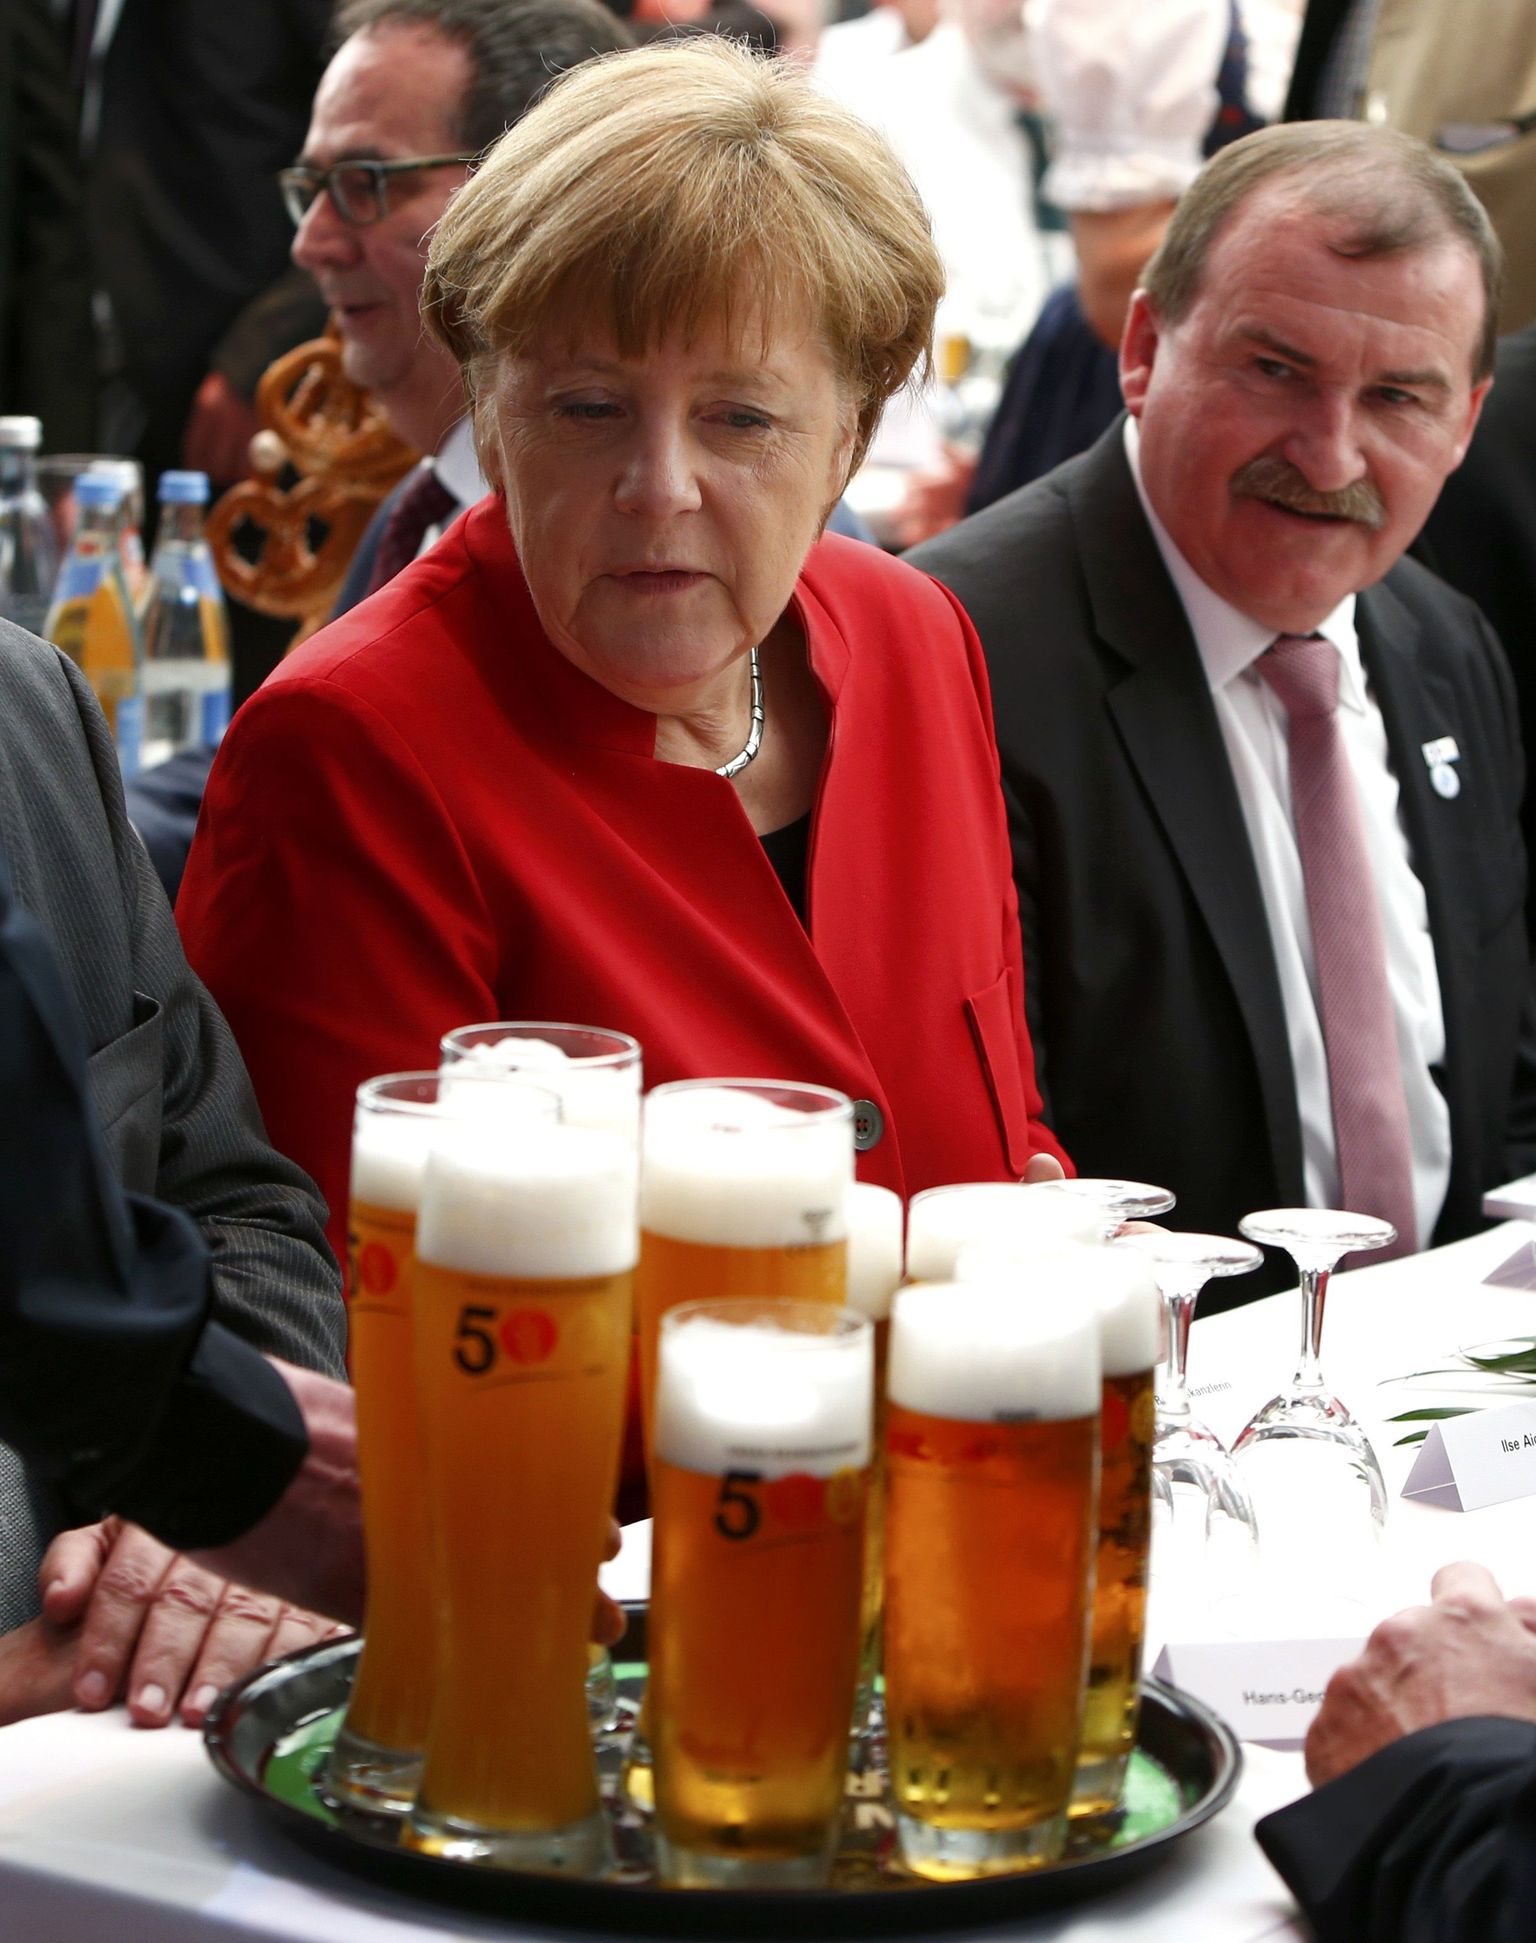 Õlu maitseb hea – sel arvamusel on ka tähtpäeva puhul Baierimaad külastav kantsler Angela Merkel.